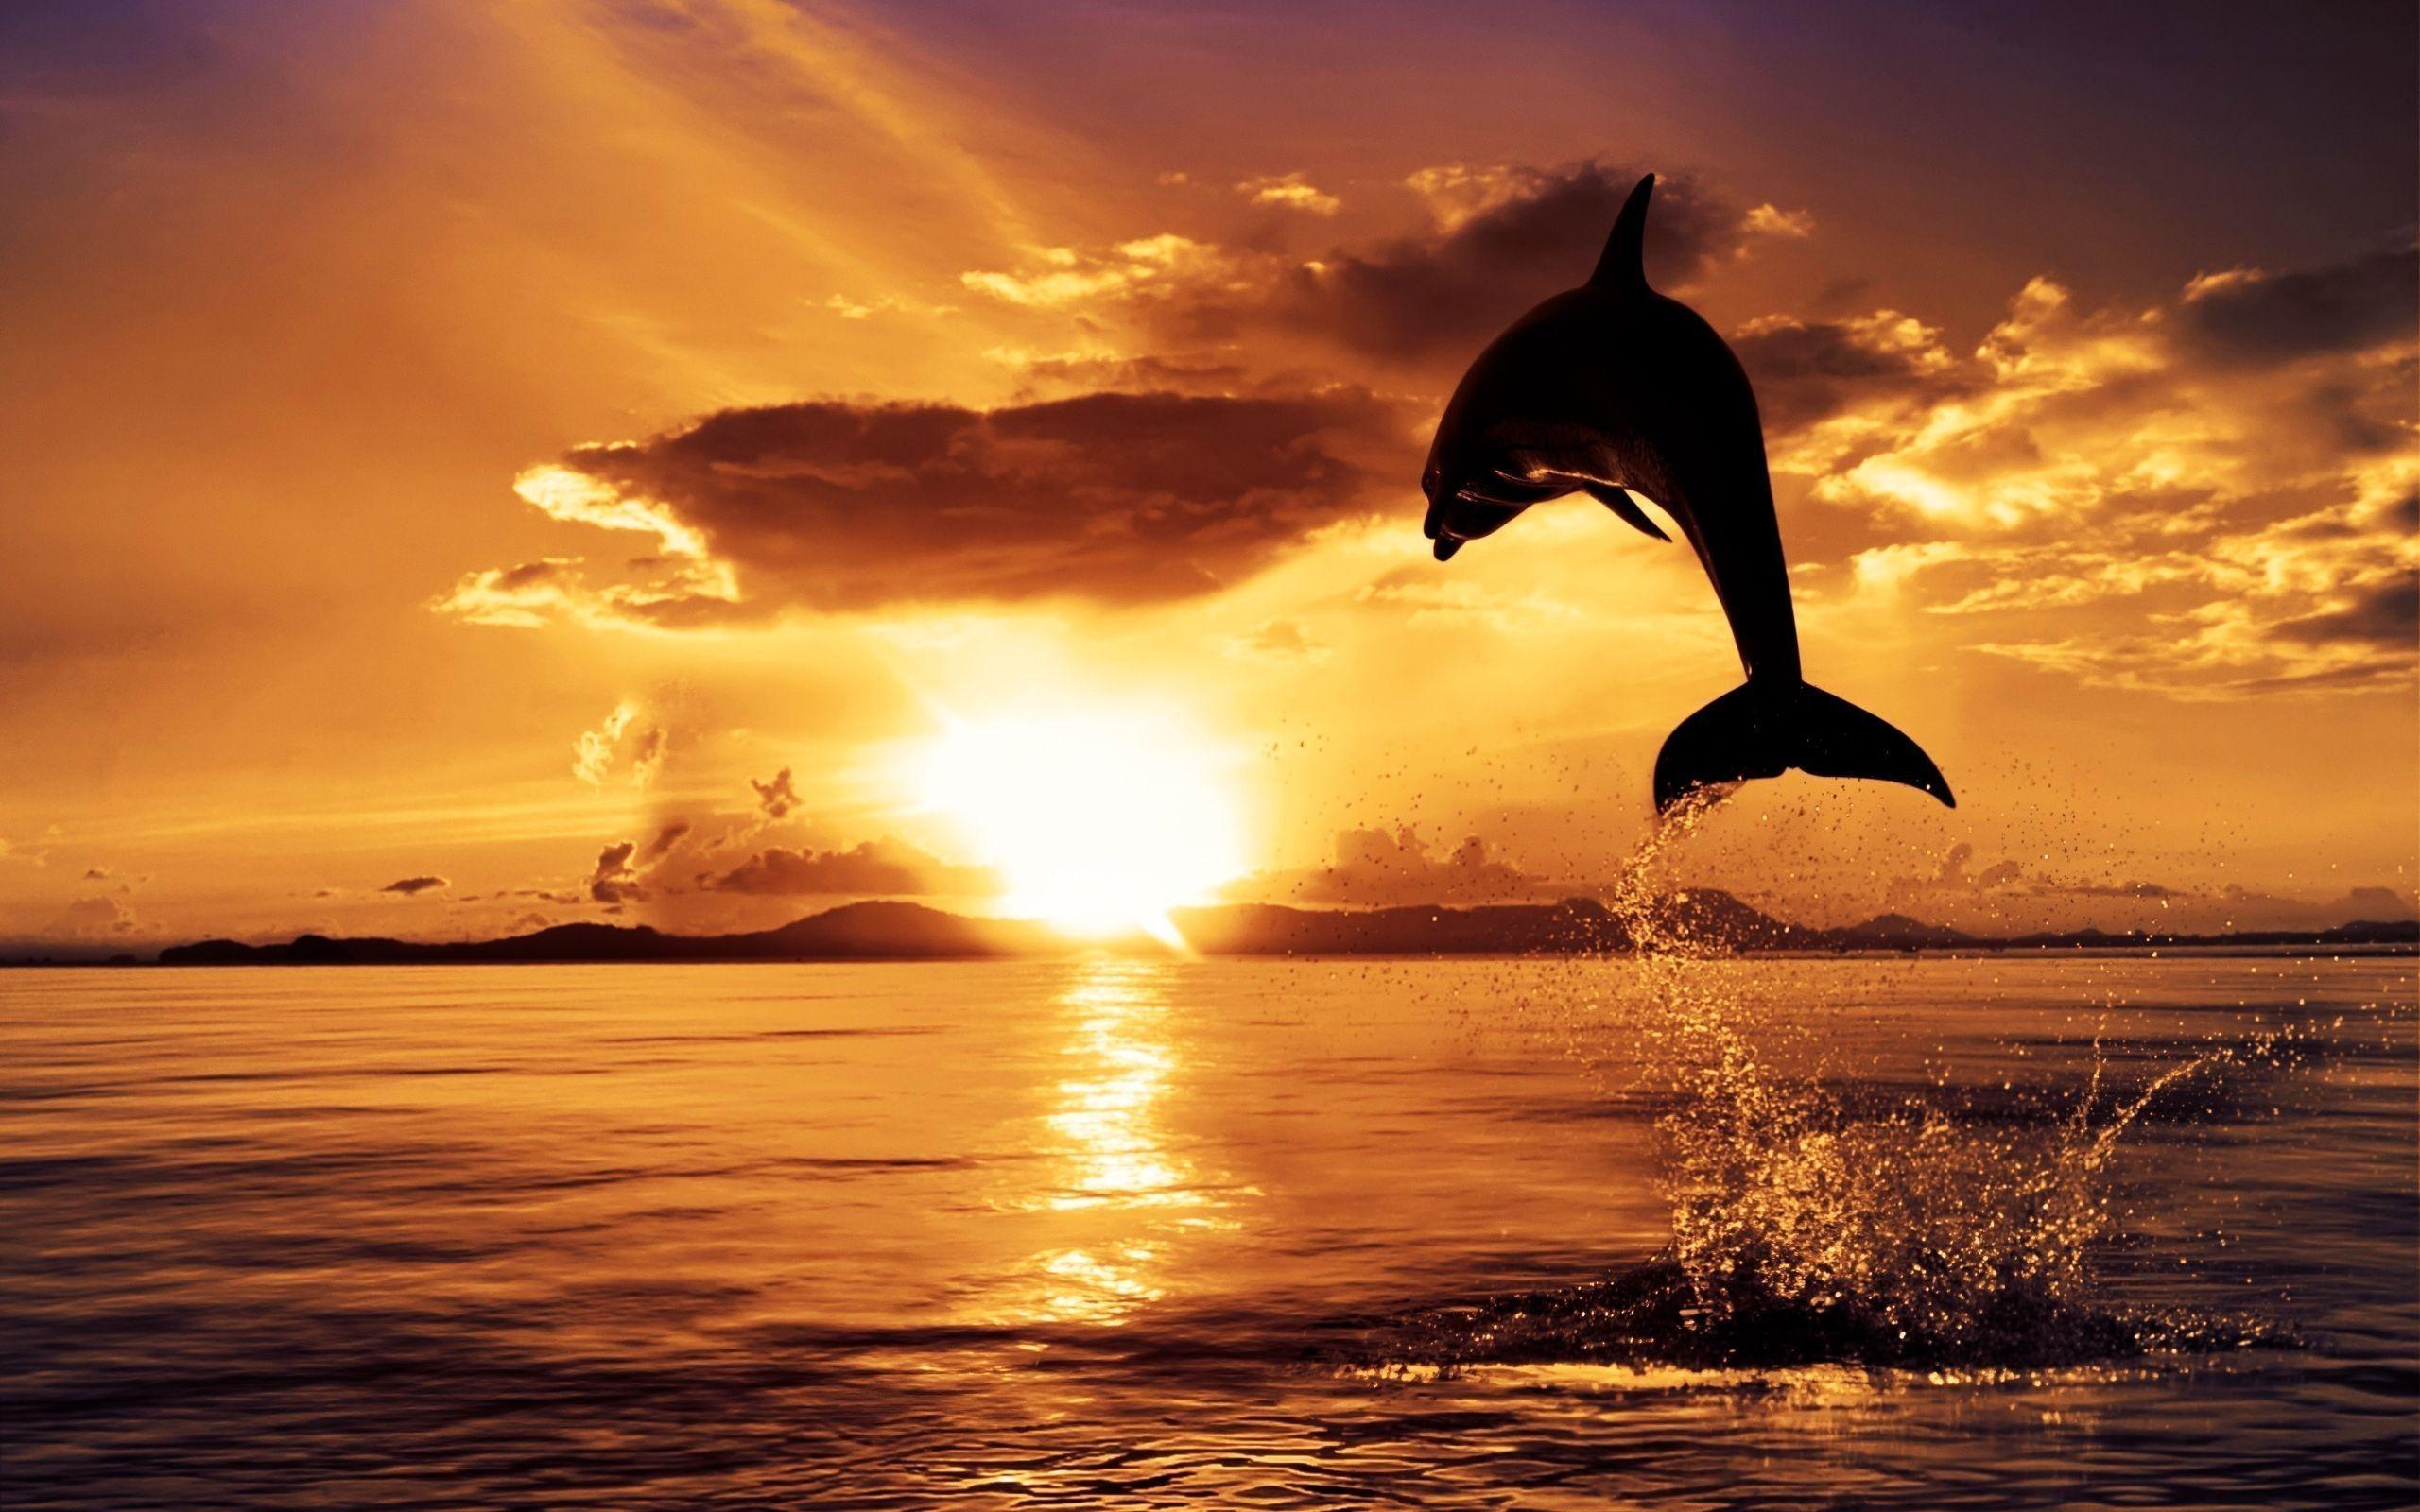 Sunset HD Wallpaper: Dolphin Jumping Sunset HD Wallpaper. .Ssofc